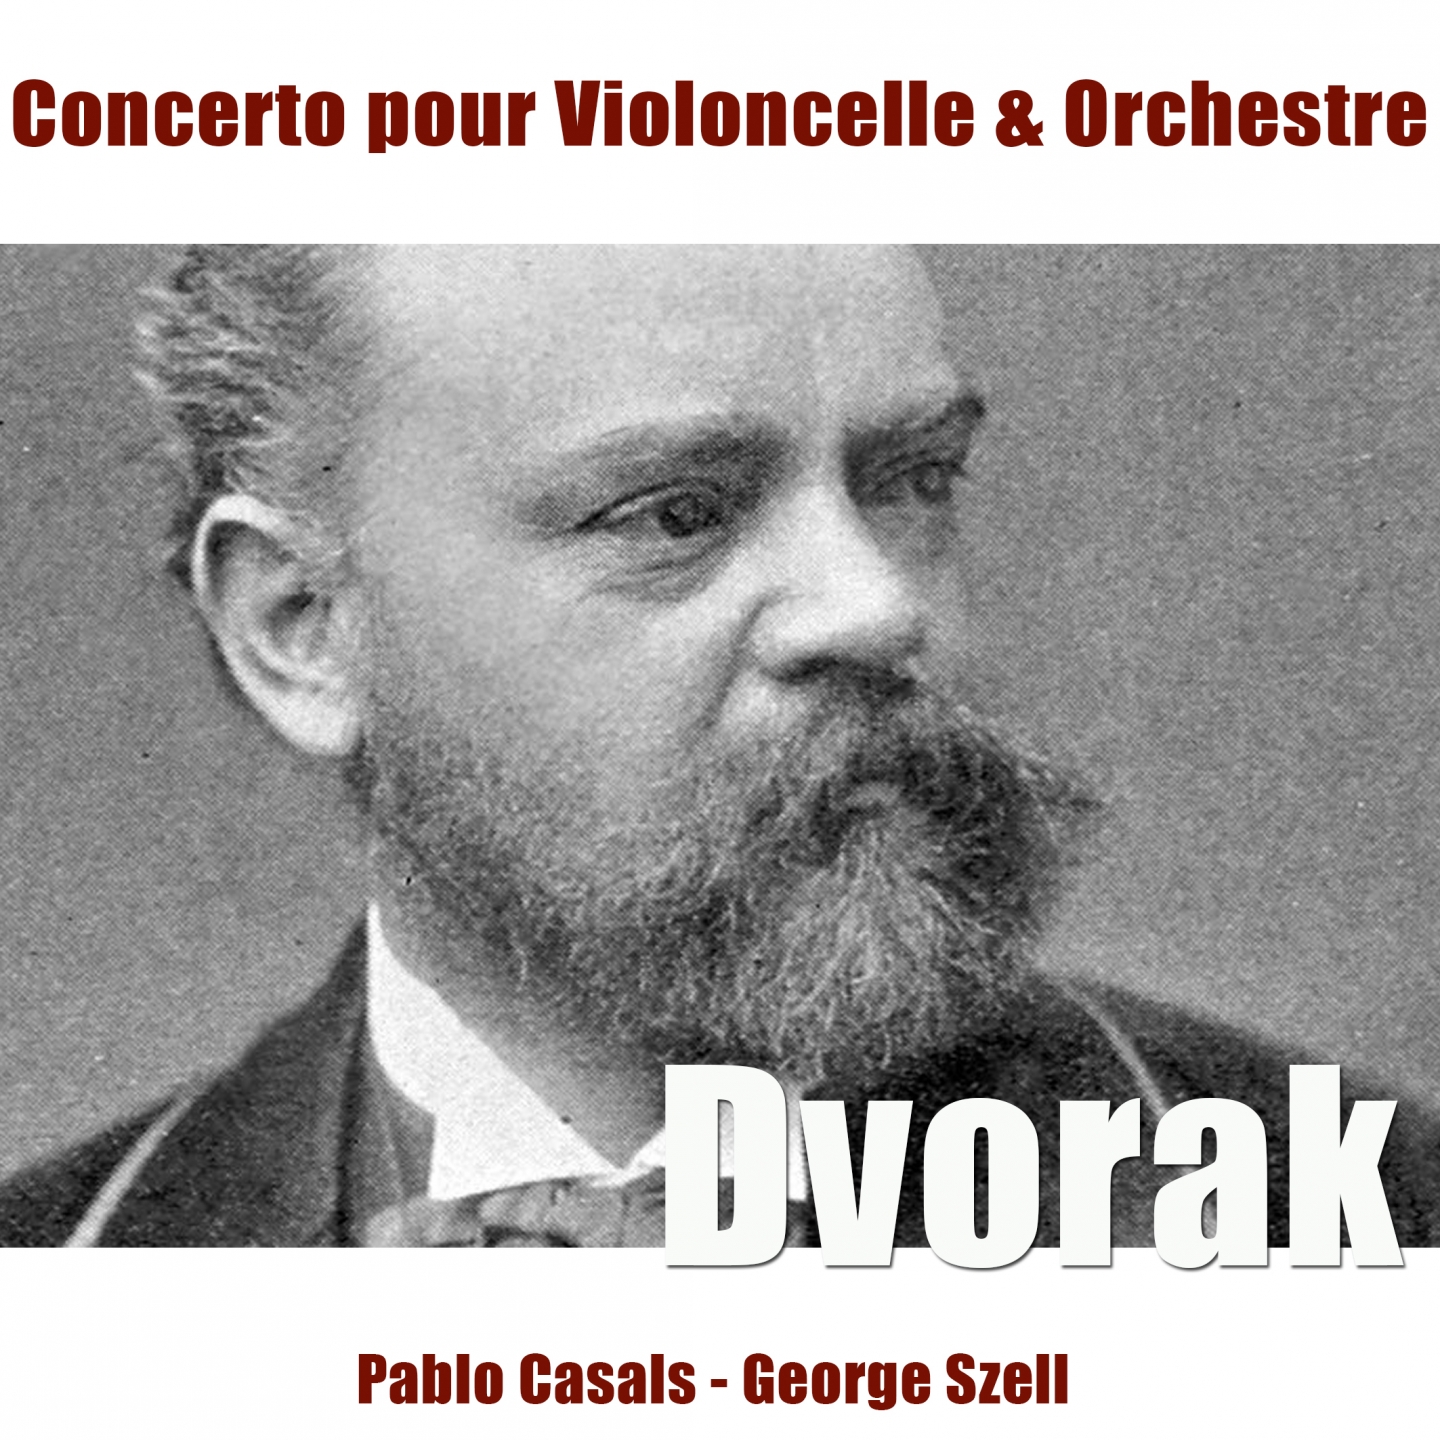 Dvoa k: Concerto pour violoncelle